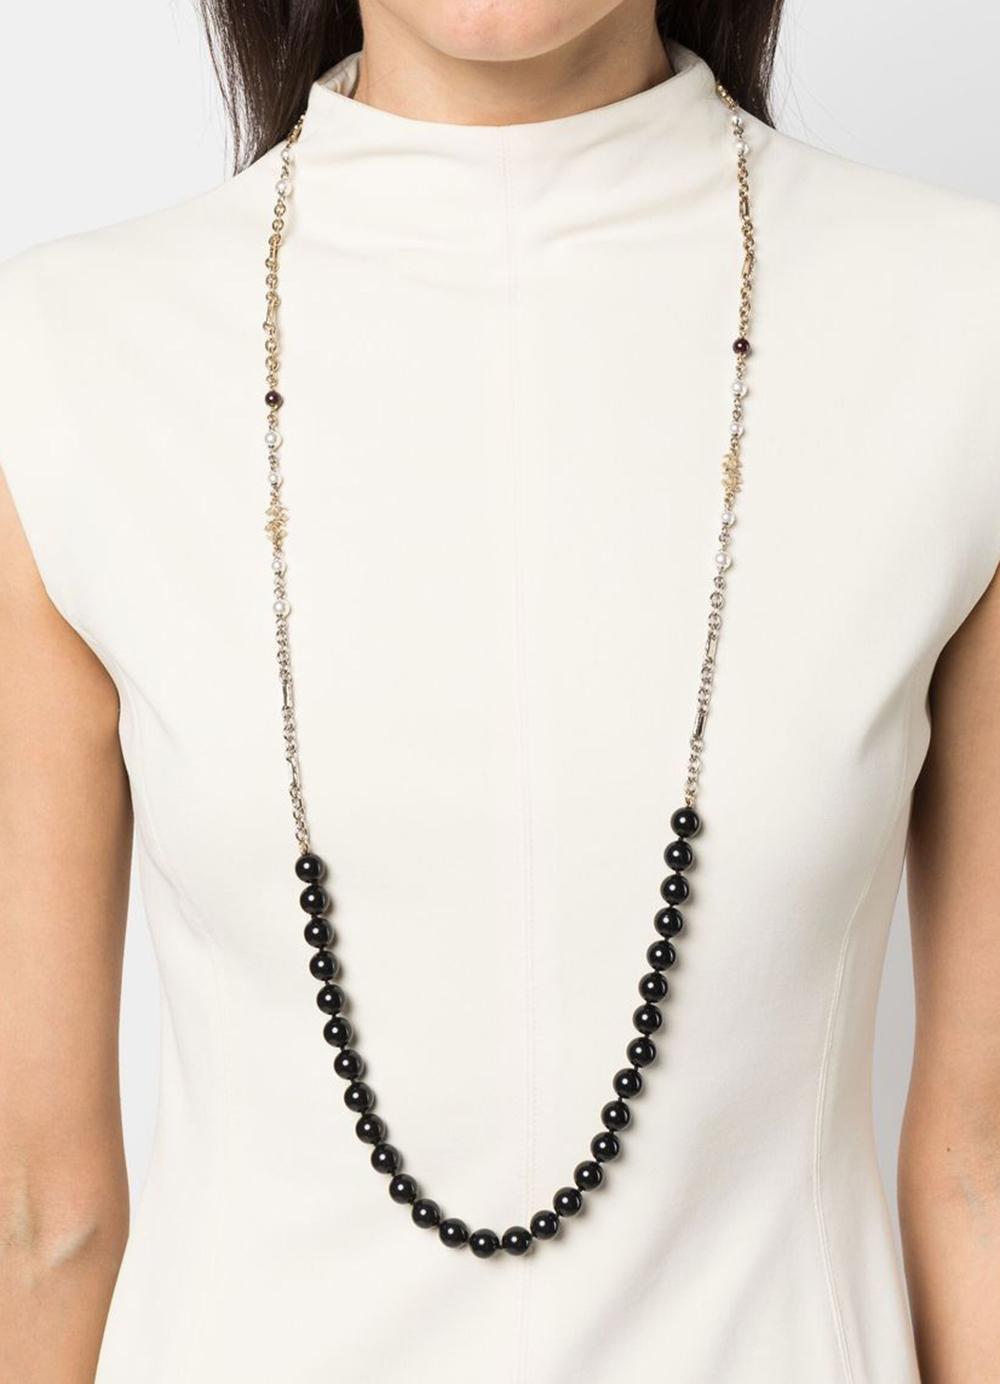 Schwarze, perlenbesetzte, lange Halskette von Chanel mit abgerundeten, schwarzen Perlen, dem charakteristischen, ineinandergreifenden CC-Logo der Marke, einem Federringverschluss mit Chanel-Lochung und einem freien Charme auf der Rückseite.
Maxi